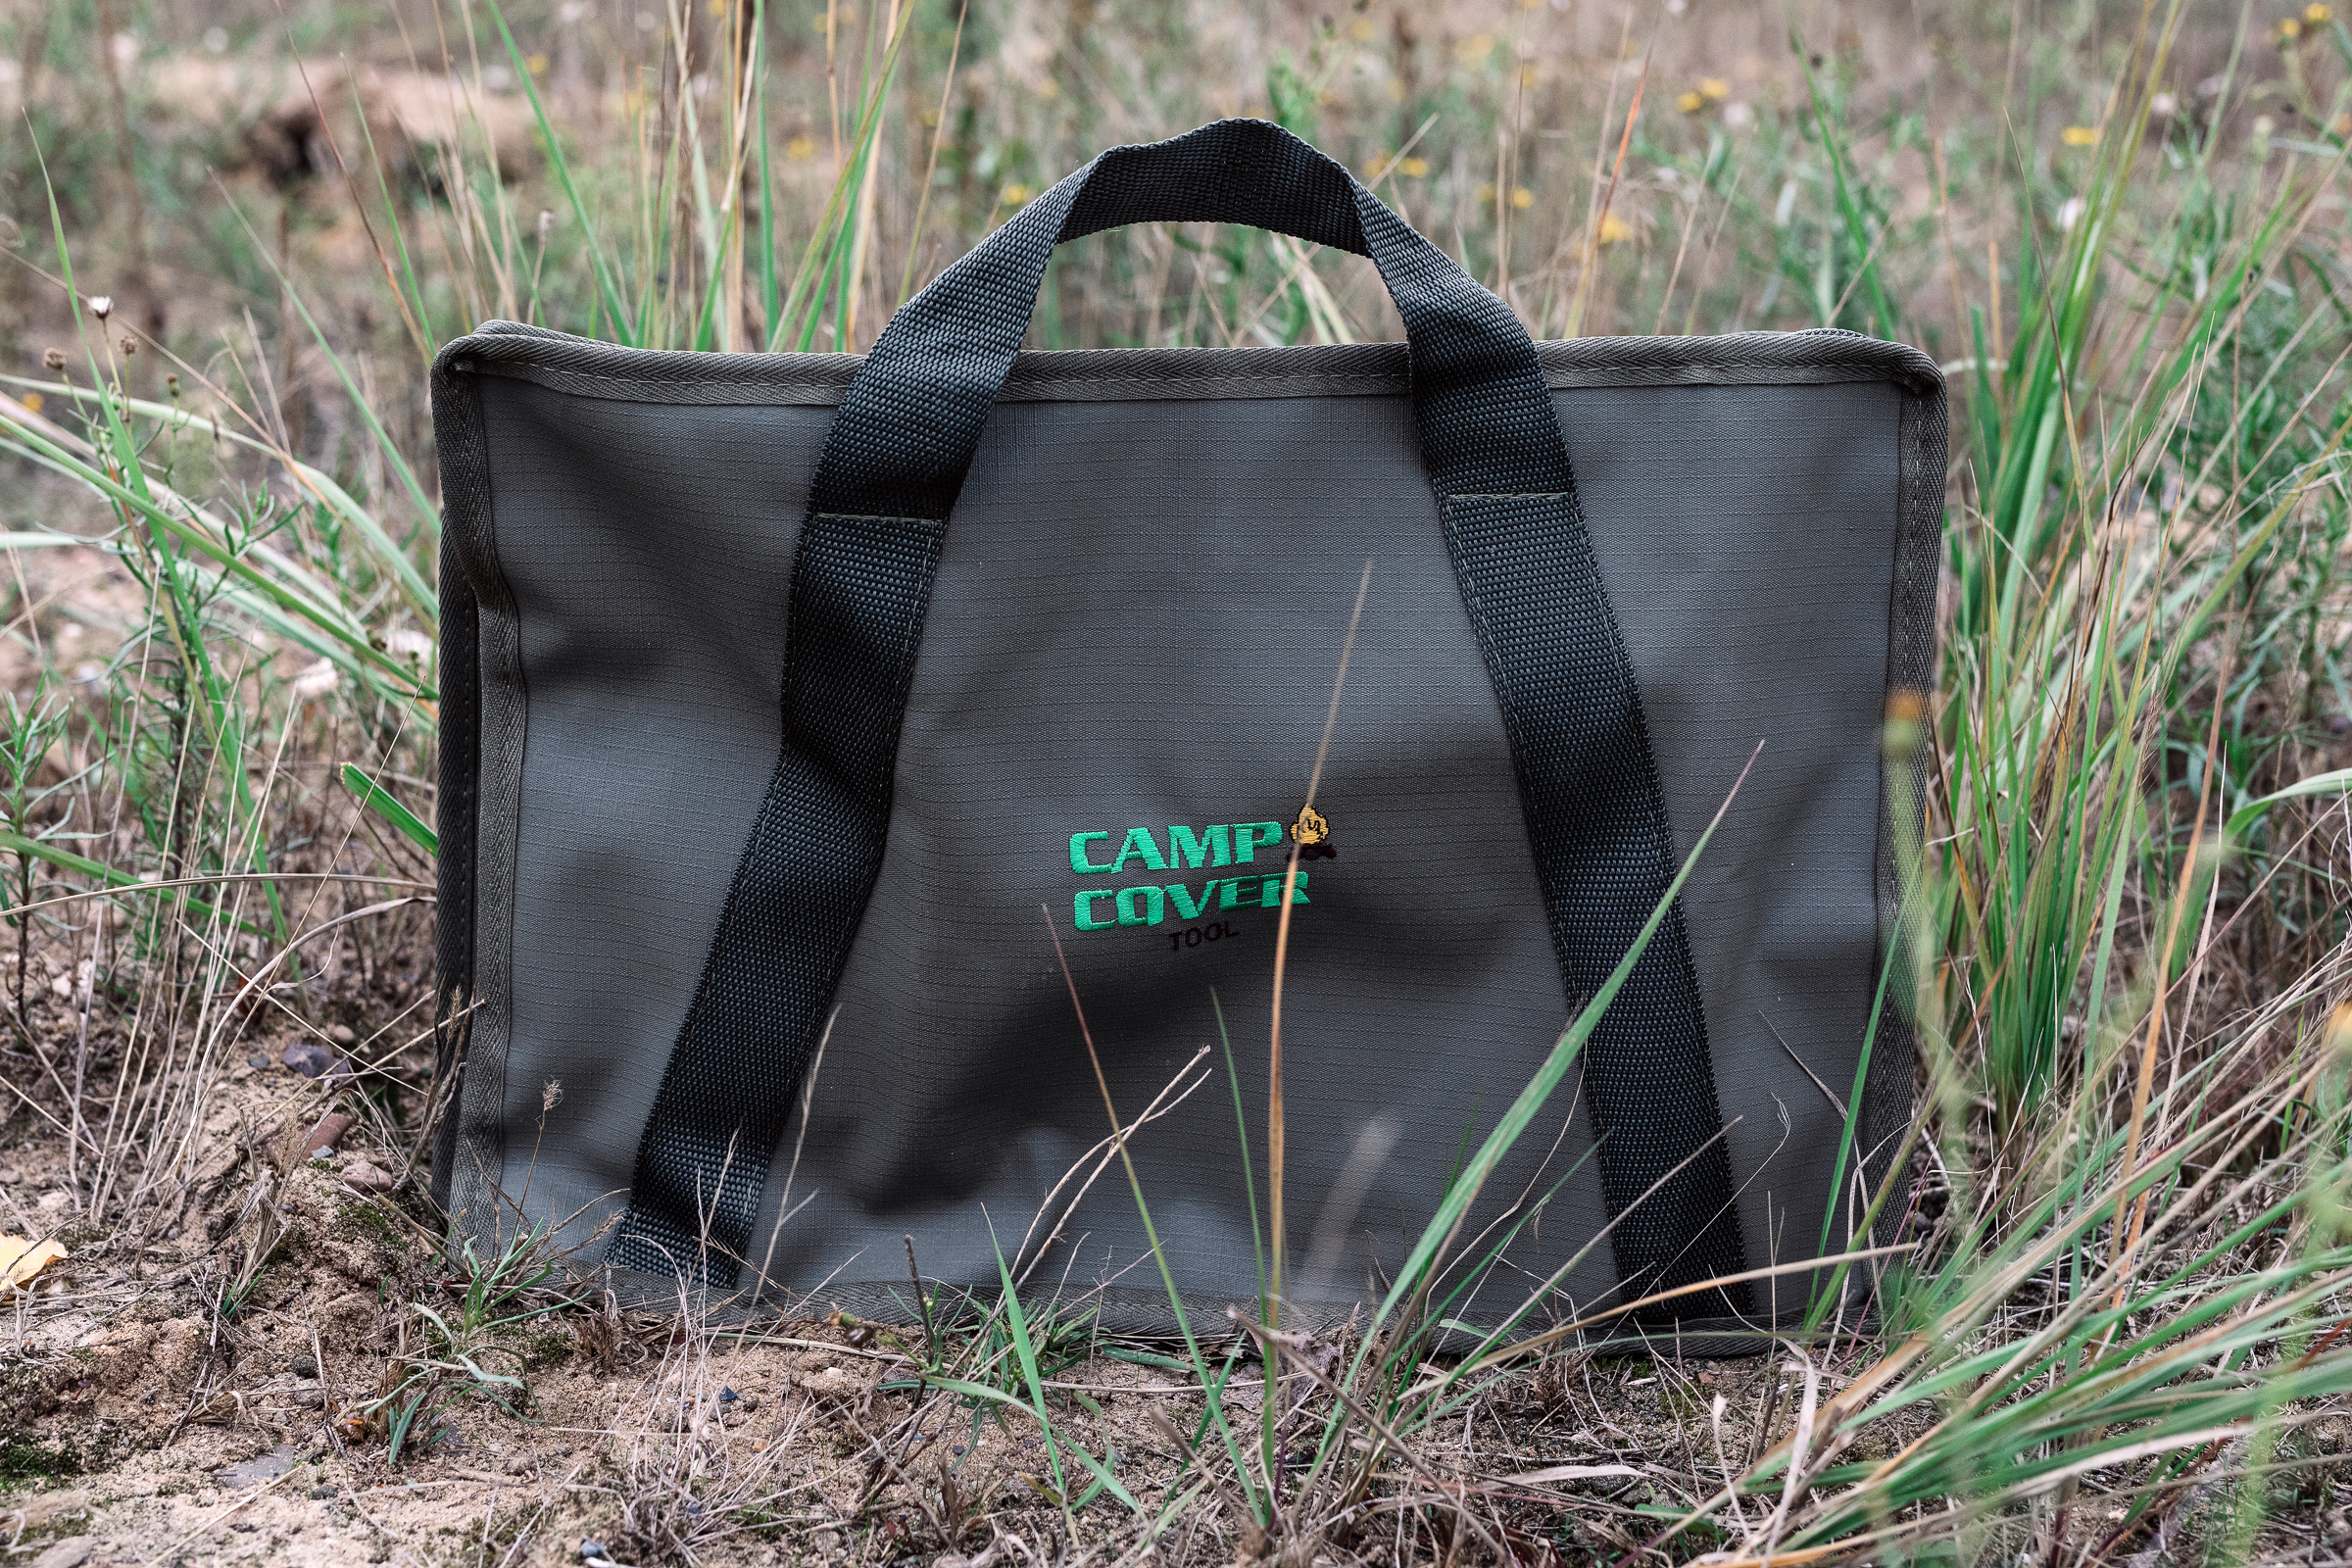 Werkzeugtaschen für Offroader - Camp Cover Werkzeugtasche